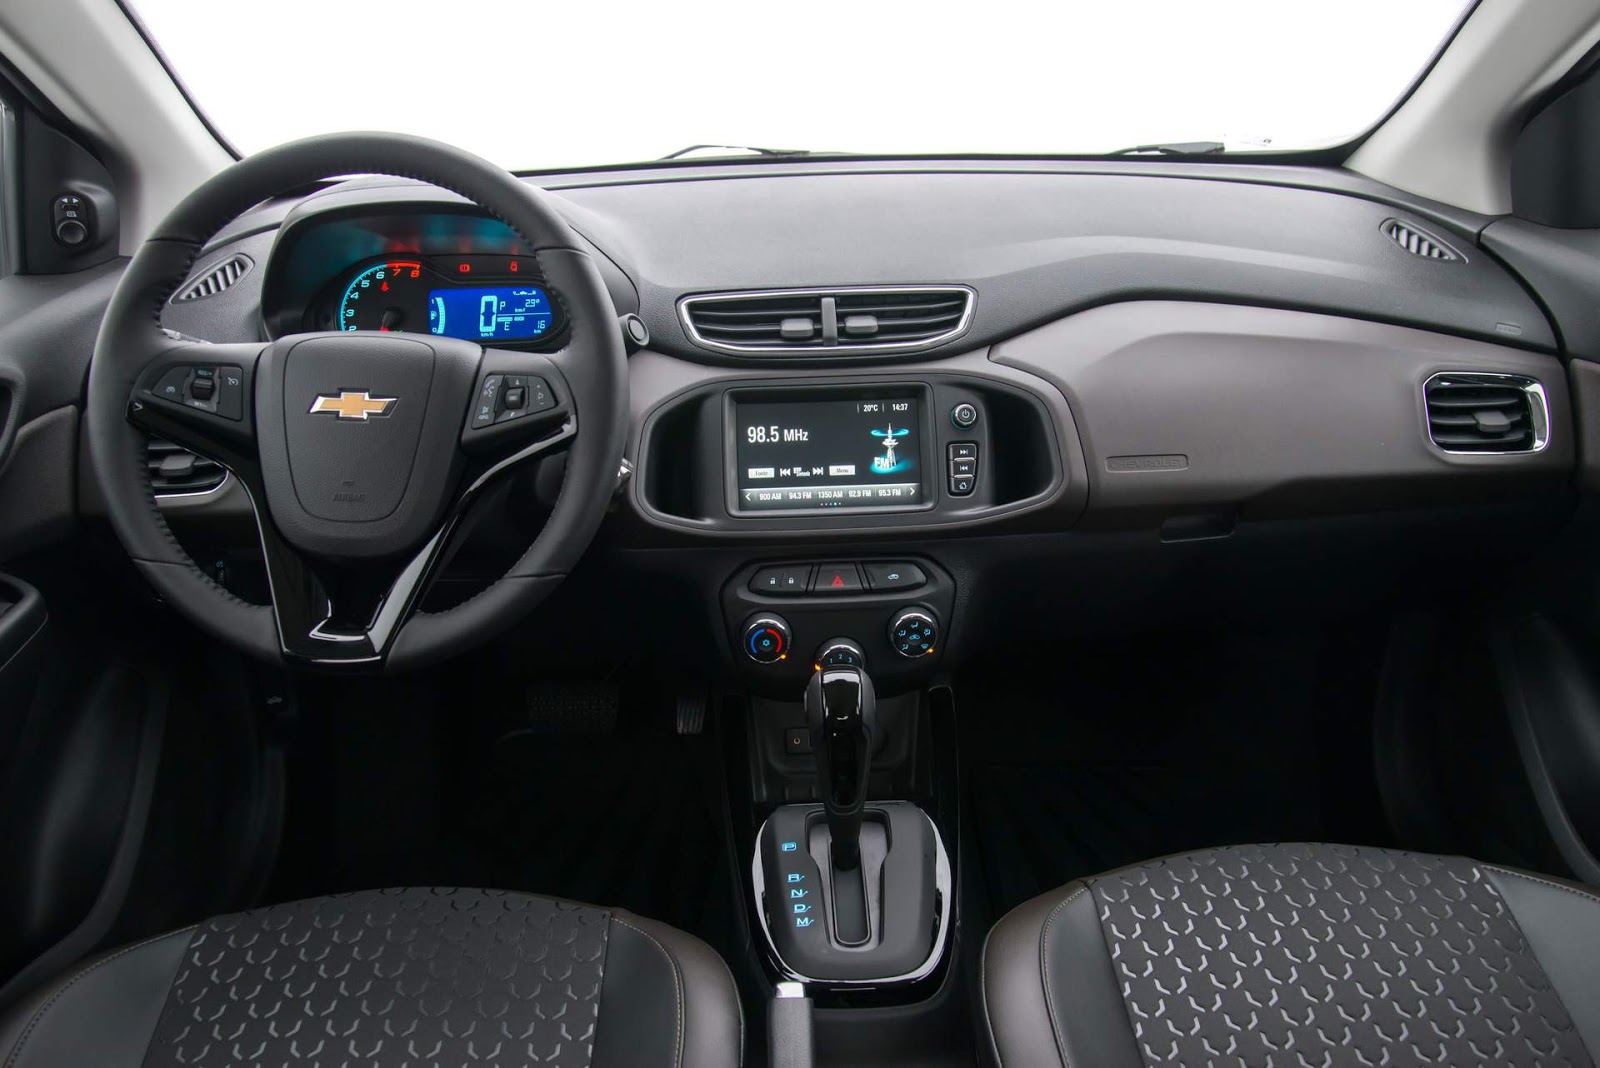 Chevrolet Prisma 2018 traz novidades em todas versões